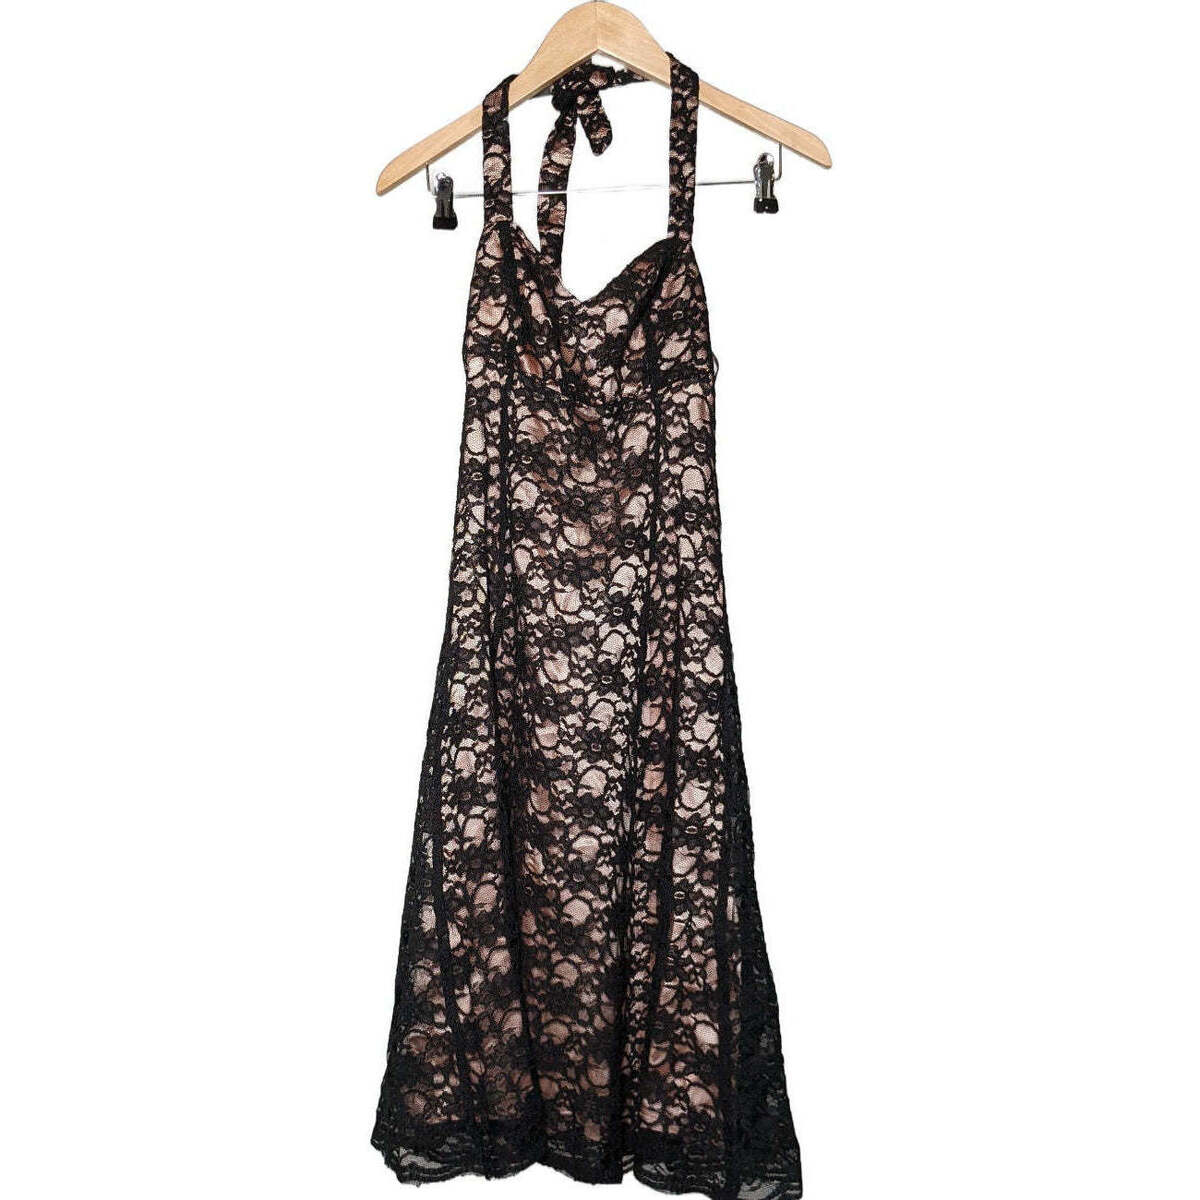 Vêtements Femme Robes longues Sinequanone robe longue  40 - T3 - L Noir Noir